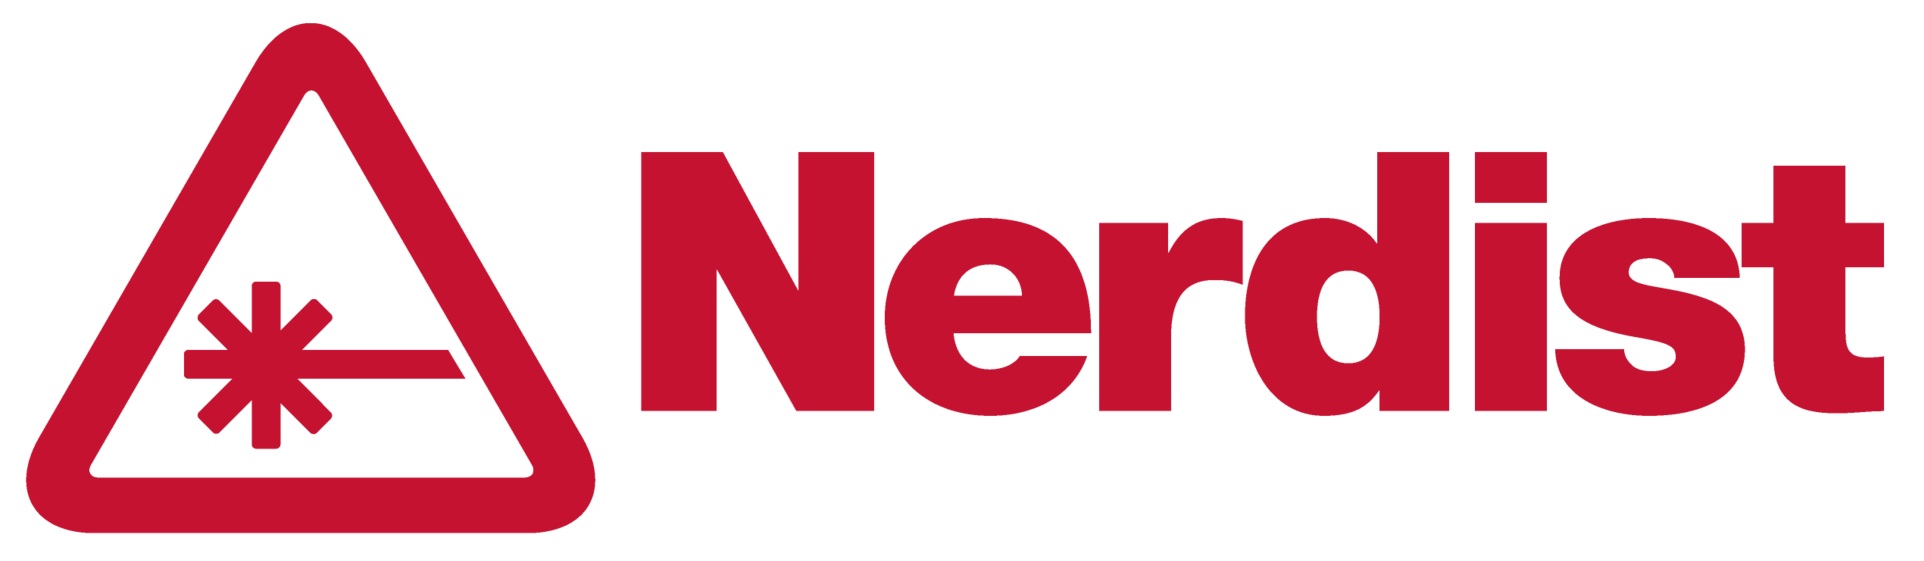 Nerdist_Logo_Horizontal_Red-2.png